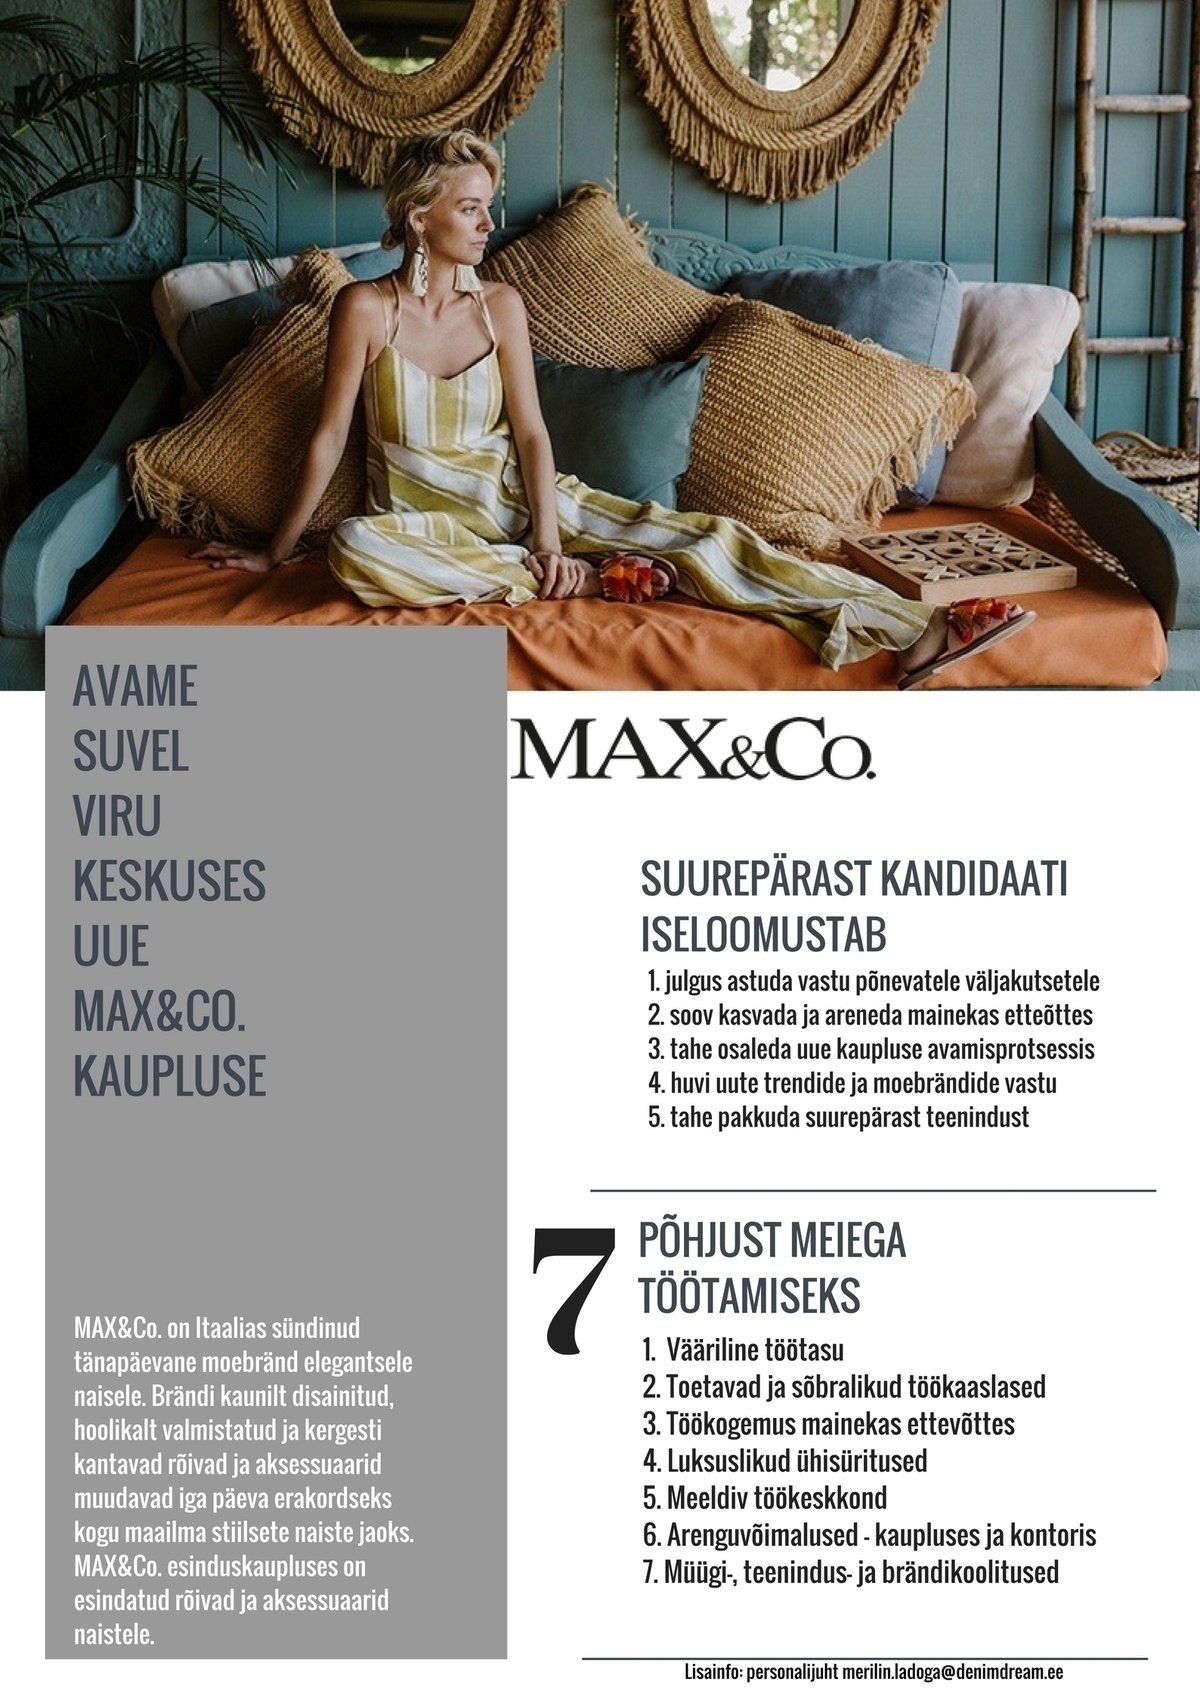 Põldma Kaubanduse AS Uue Viru MAX&Co.esinduskaupluse MÜÜGIKONSULTANT